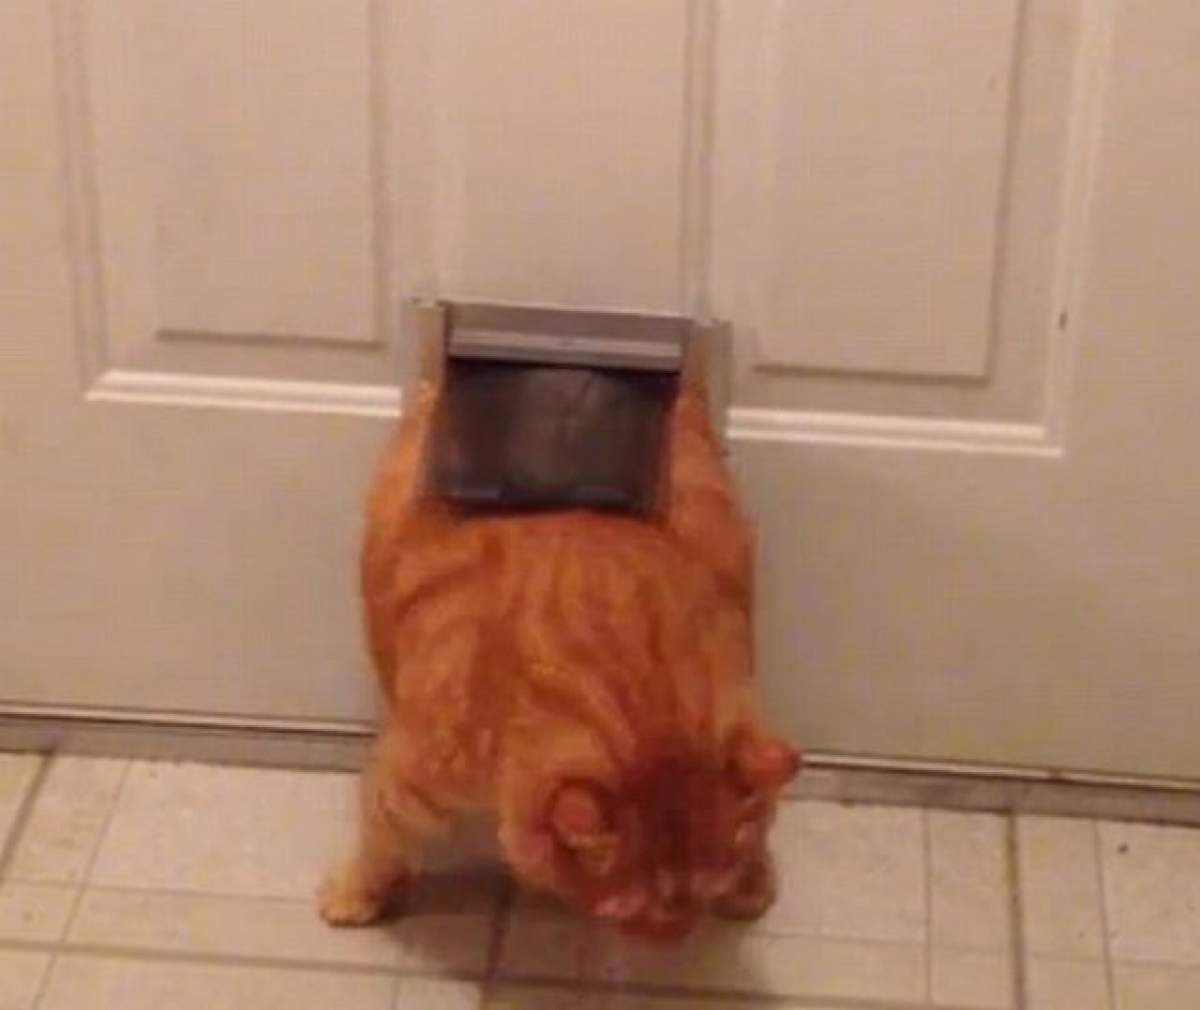 Trebuie să vezi asta! O pisică grasă încearcă să treacă printr-o uşă prea mică pentru ea! VIDEO HAIOS!